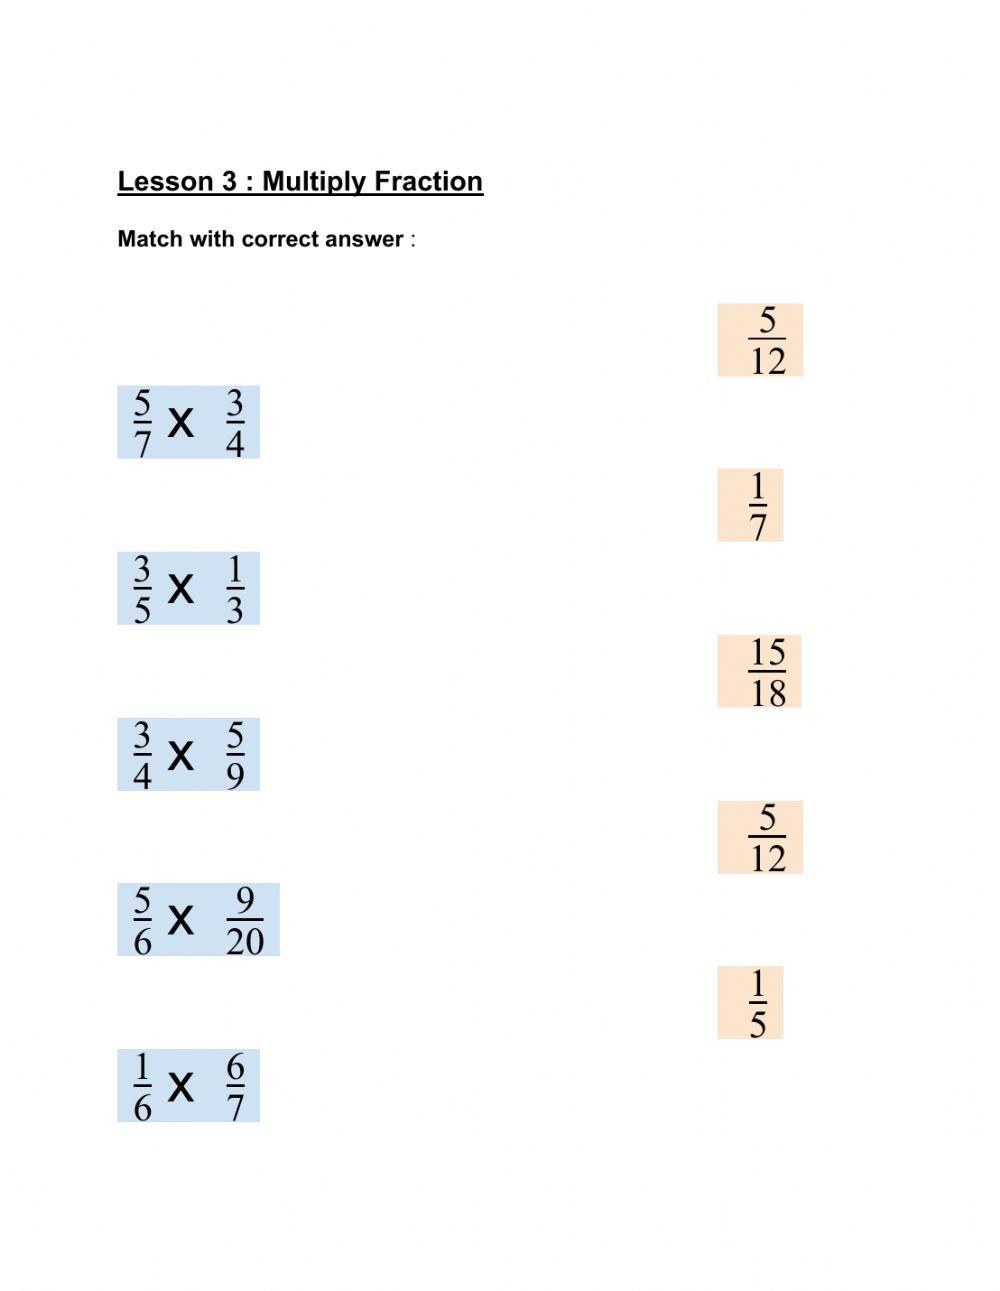 Multiply fraction